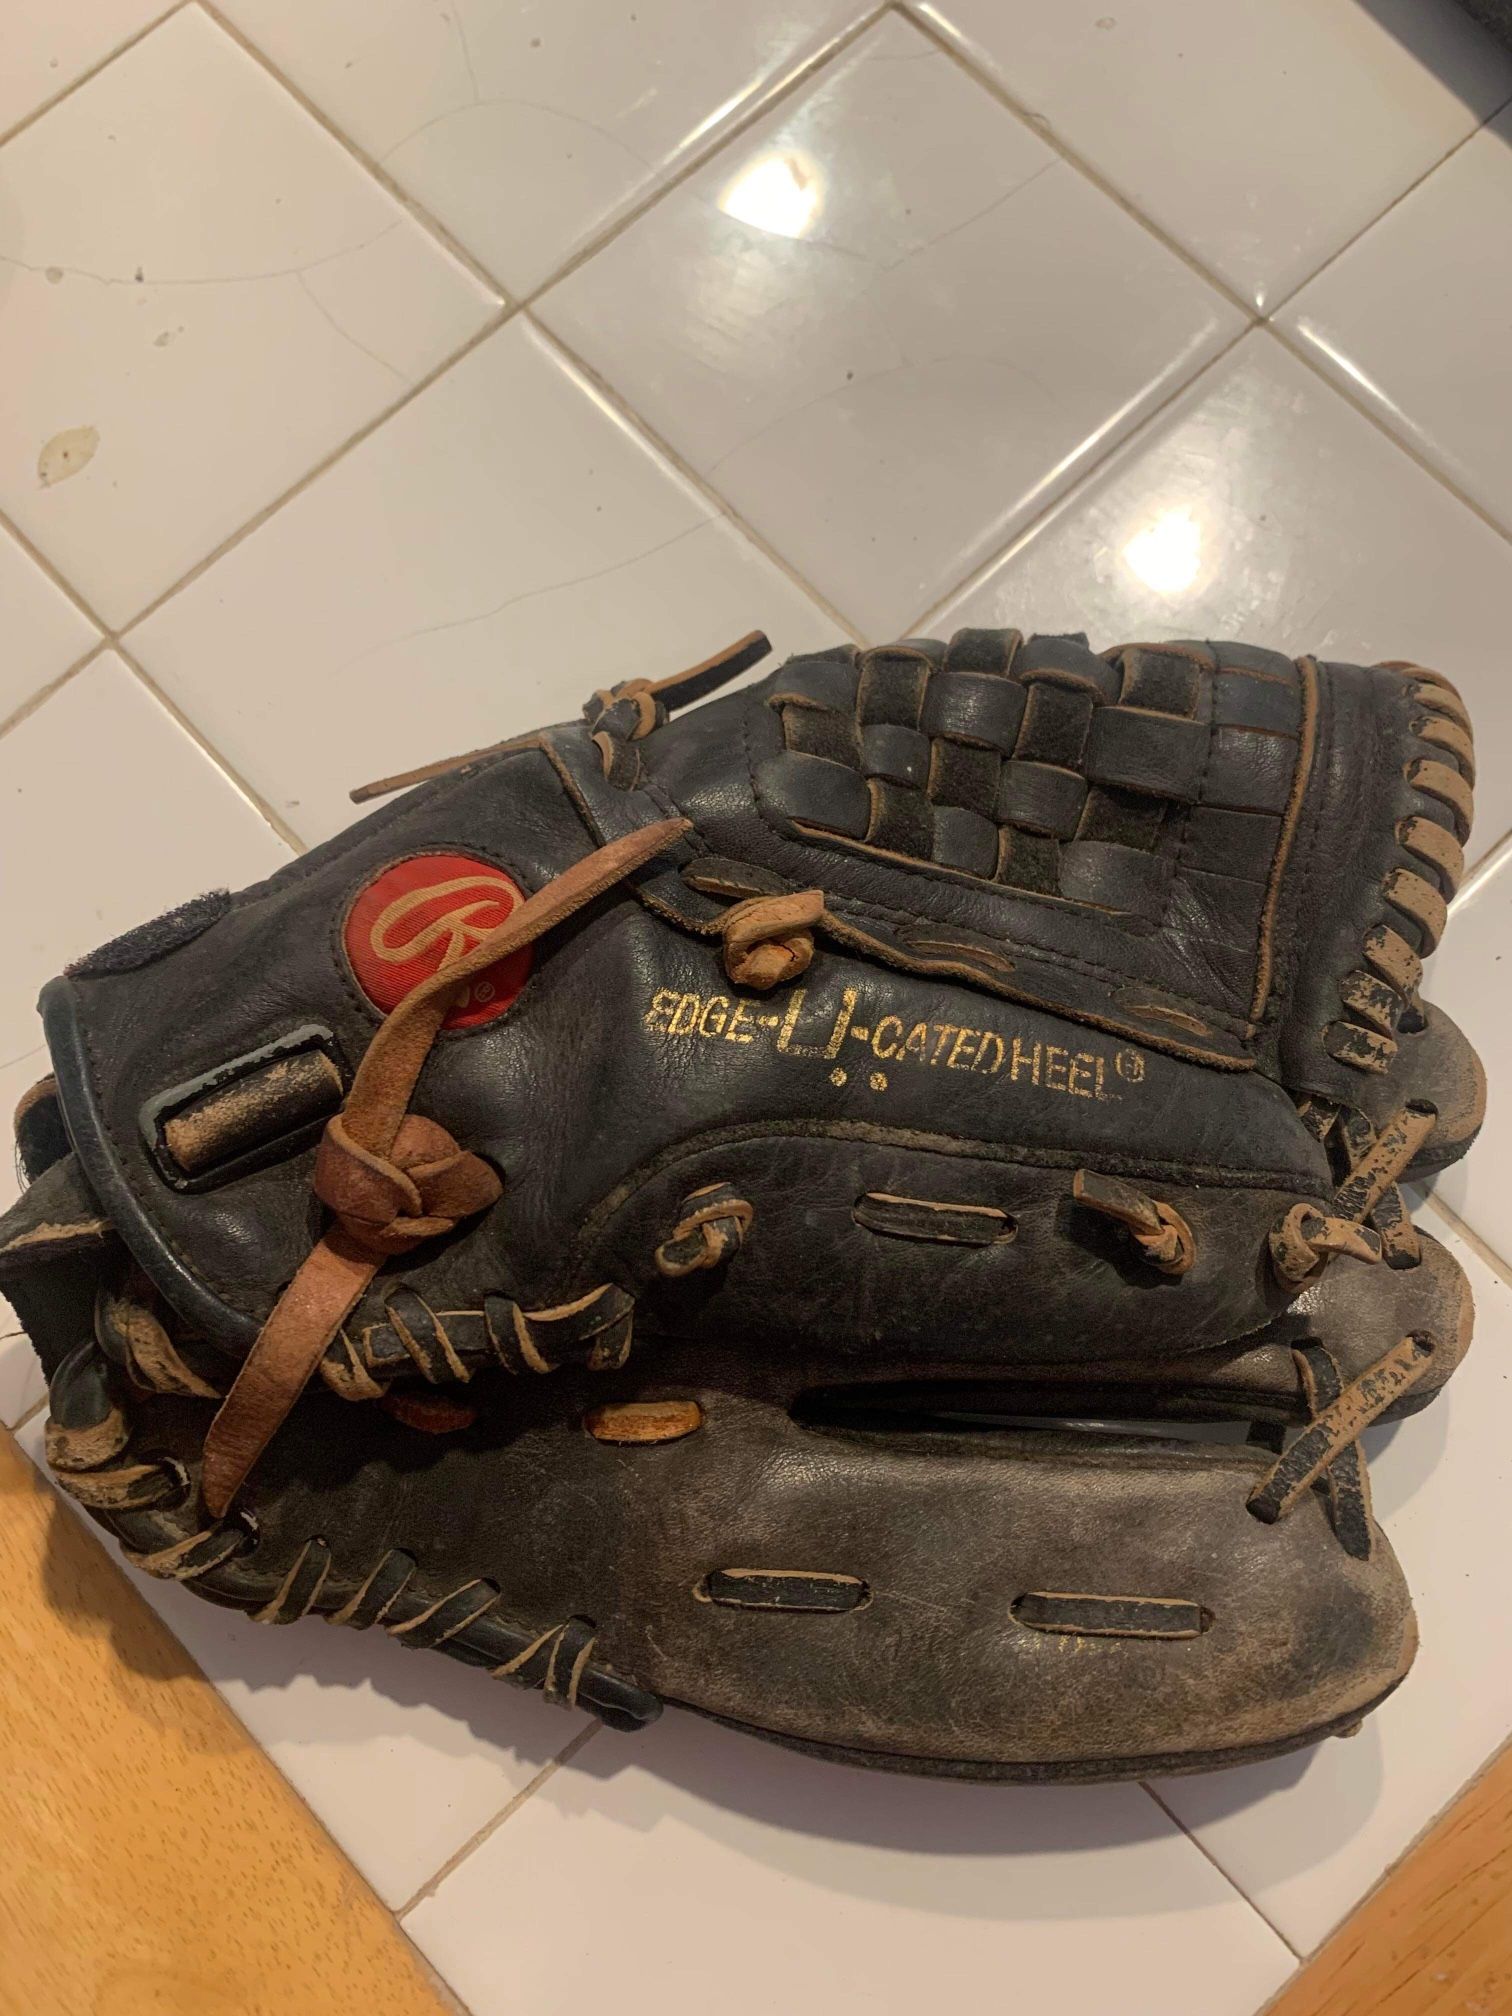 Rawlings Edge-U-CATED Heal Baseball Glove